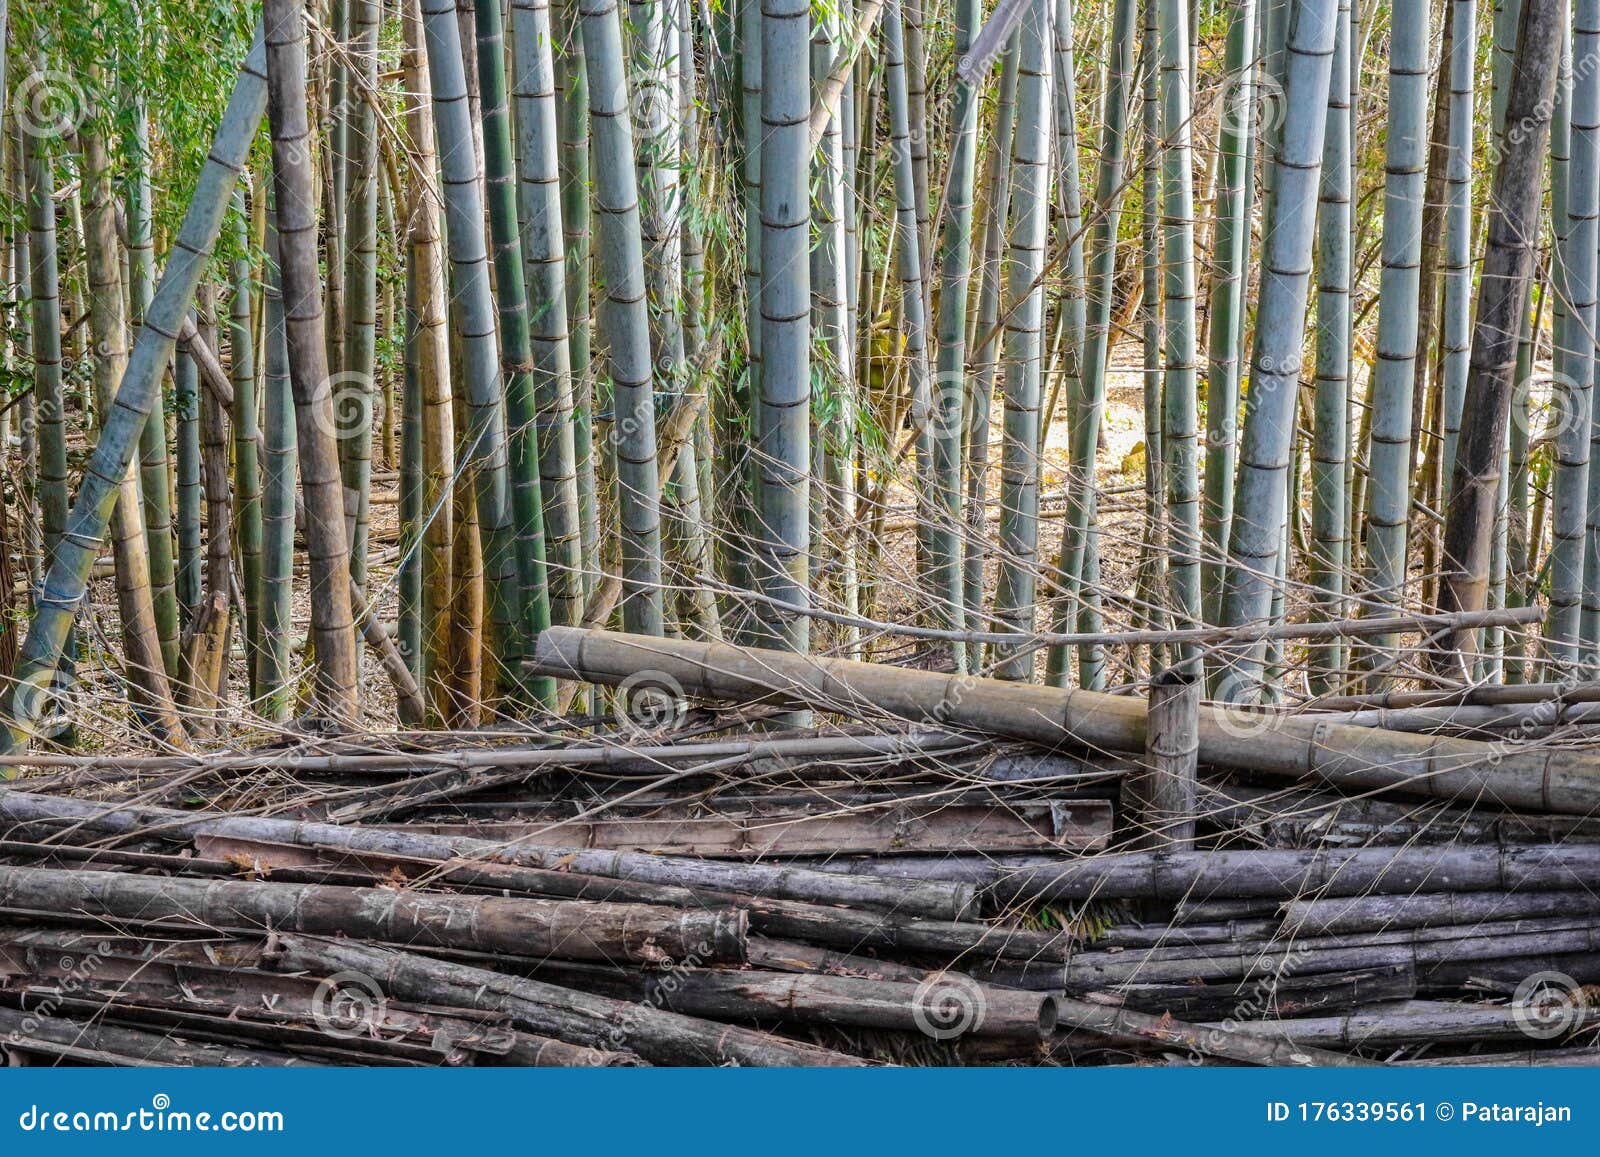 Droog Dood En Stamleven Bamboe in De Bosomgeving. Stock Afbeelding - of botanisch, mooi: 176339561